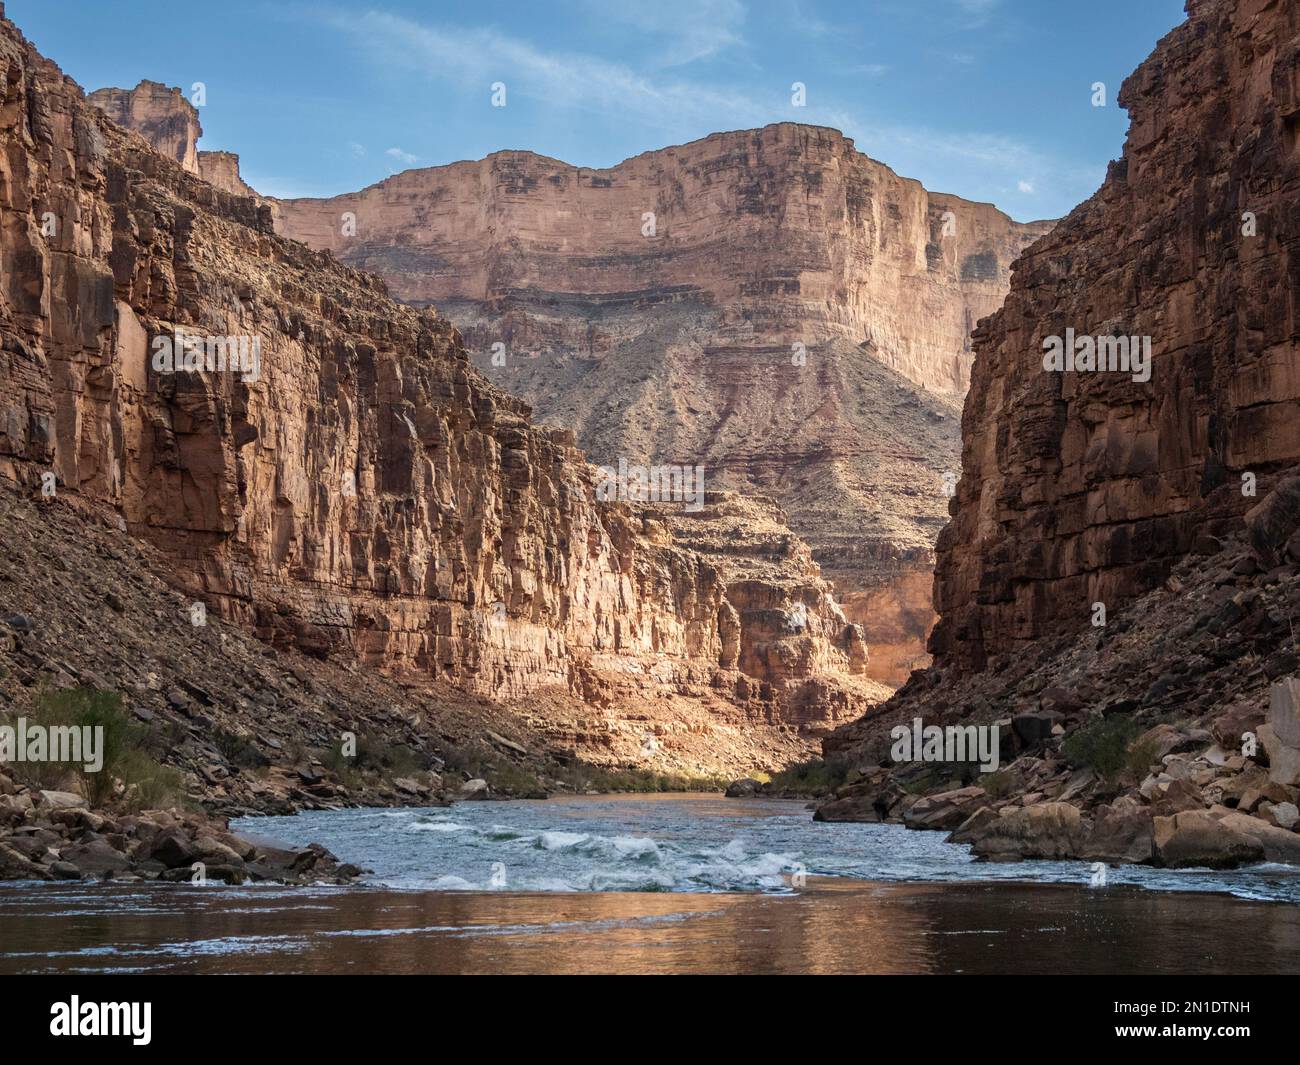 Vue sur le Grand Canyon supérieur, le parc national du Grand Canyon, site classé au patrimoine mondial de l'UNESCO, Arizona, États-Unis d'Amérique, Amérique du Nord Banque D'Images